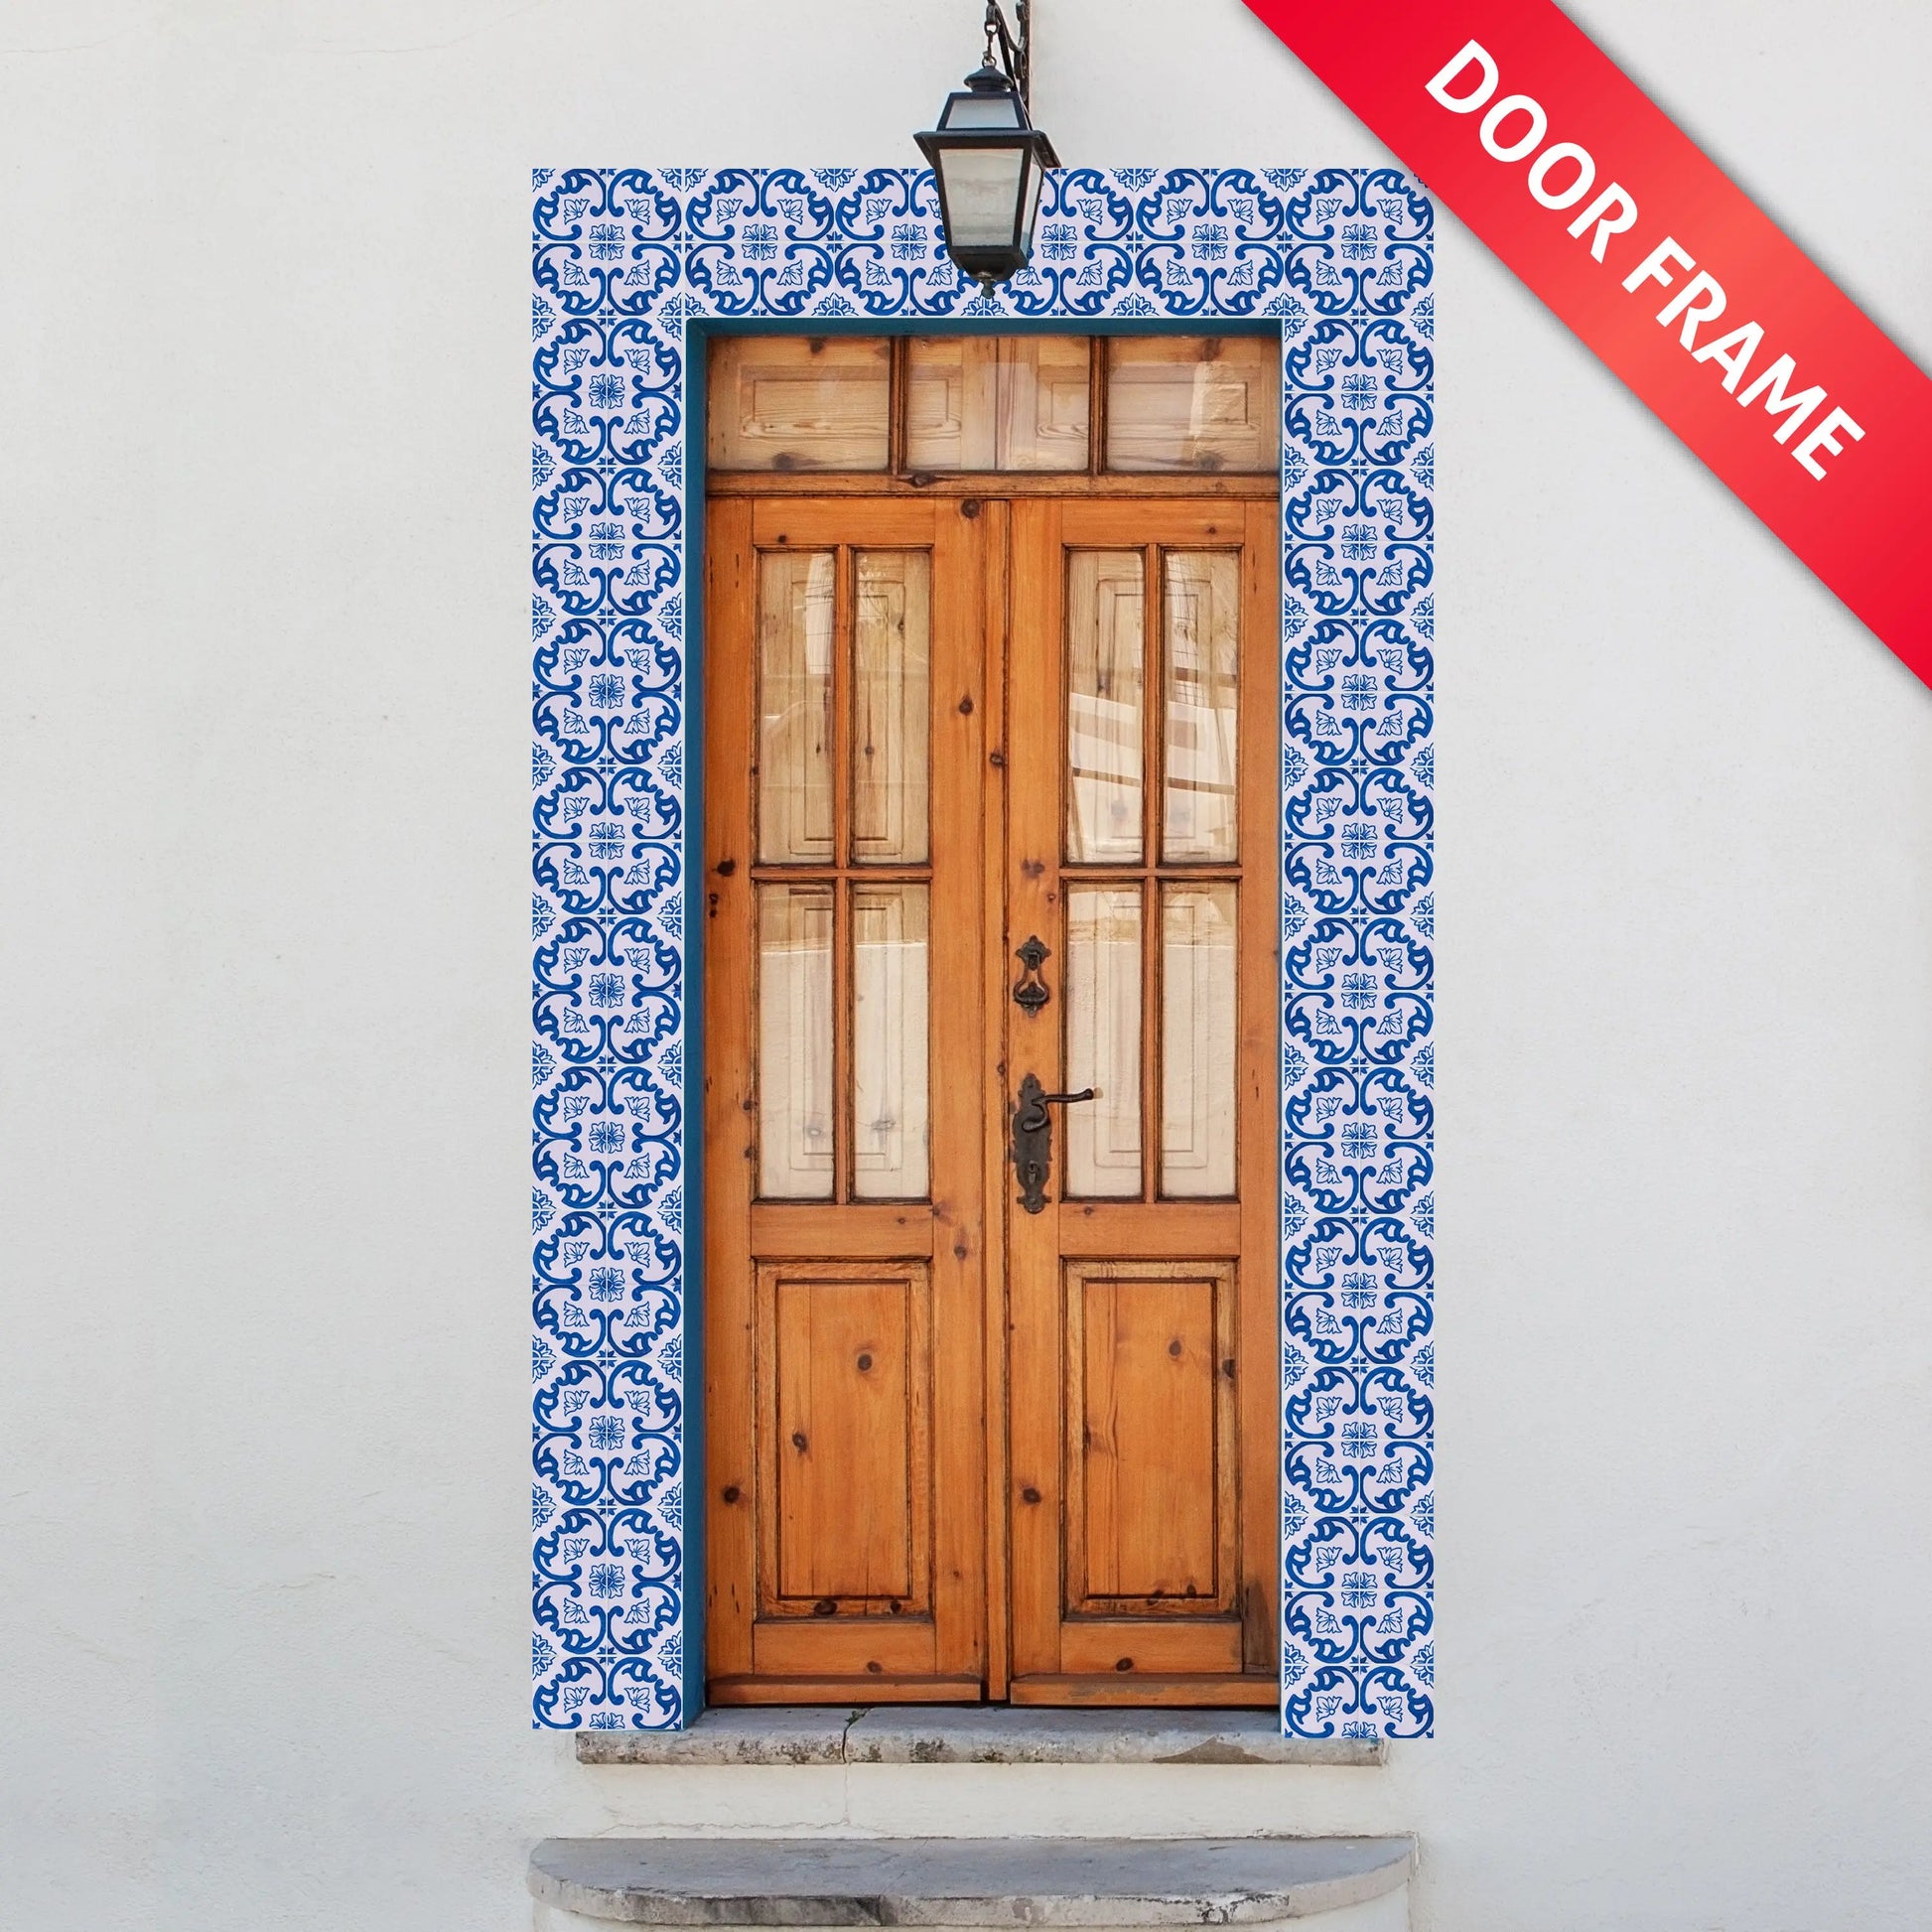 Portuguese Inspired Azulejos Warrior Ceramic Tile Door Frame-Rooster Camisa